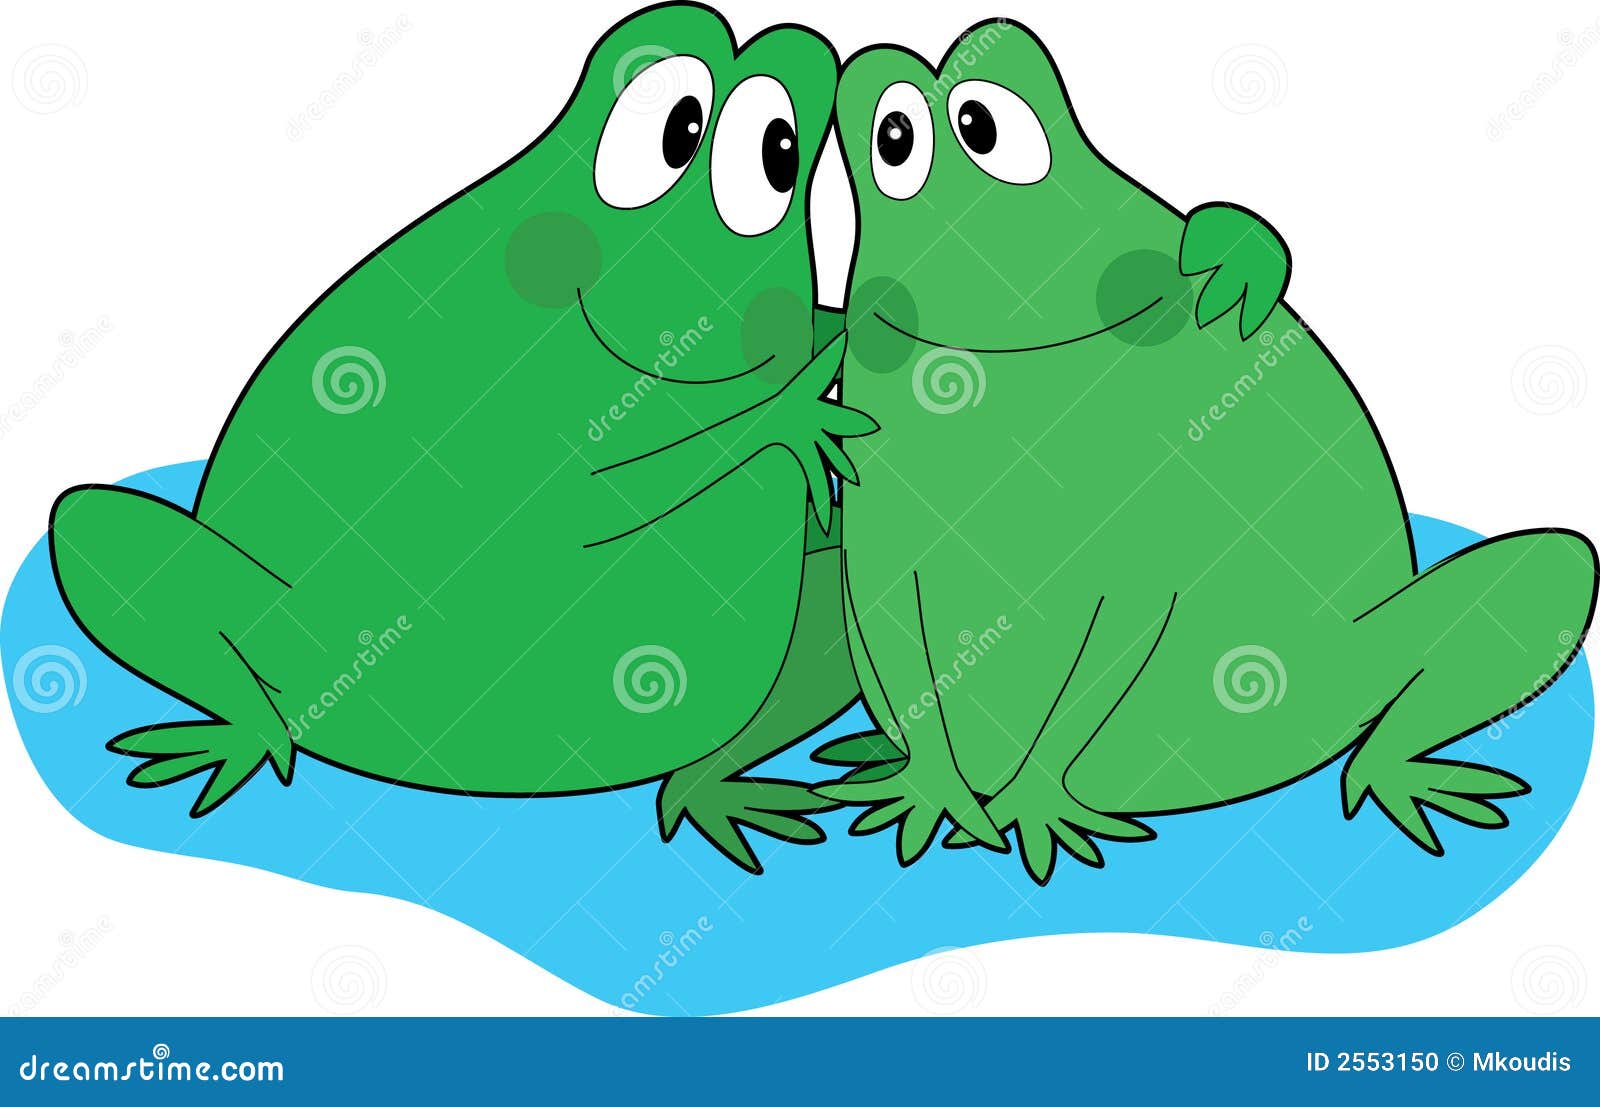 Лягушки друг на друге почему. Лягушки друзья. Лягушки друг за другом. 2 Лягушки друг на друге. Два друга жаба нарисованные.